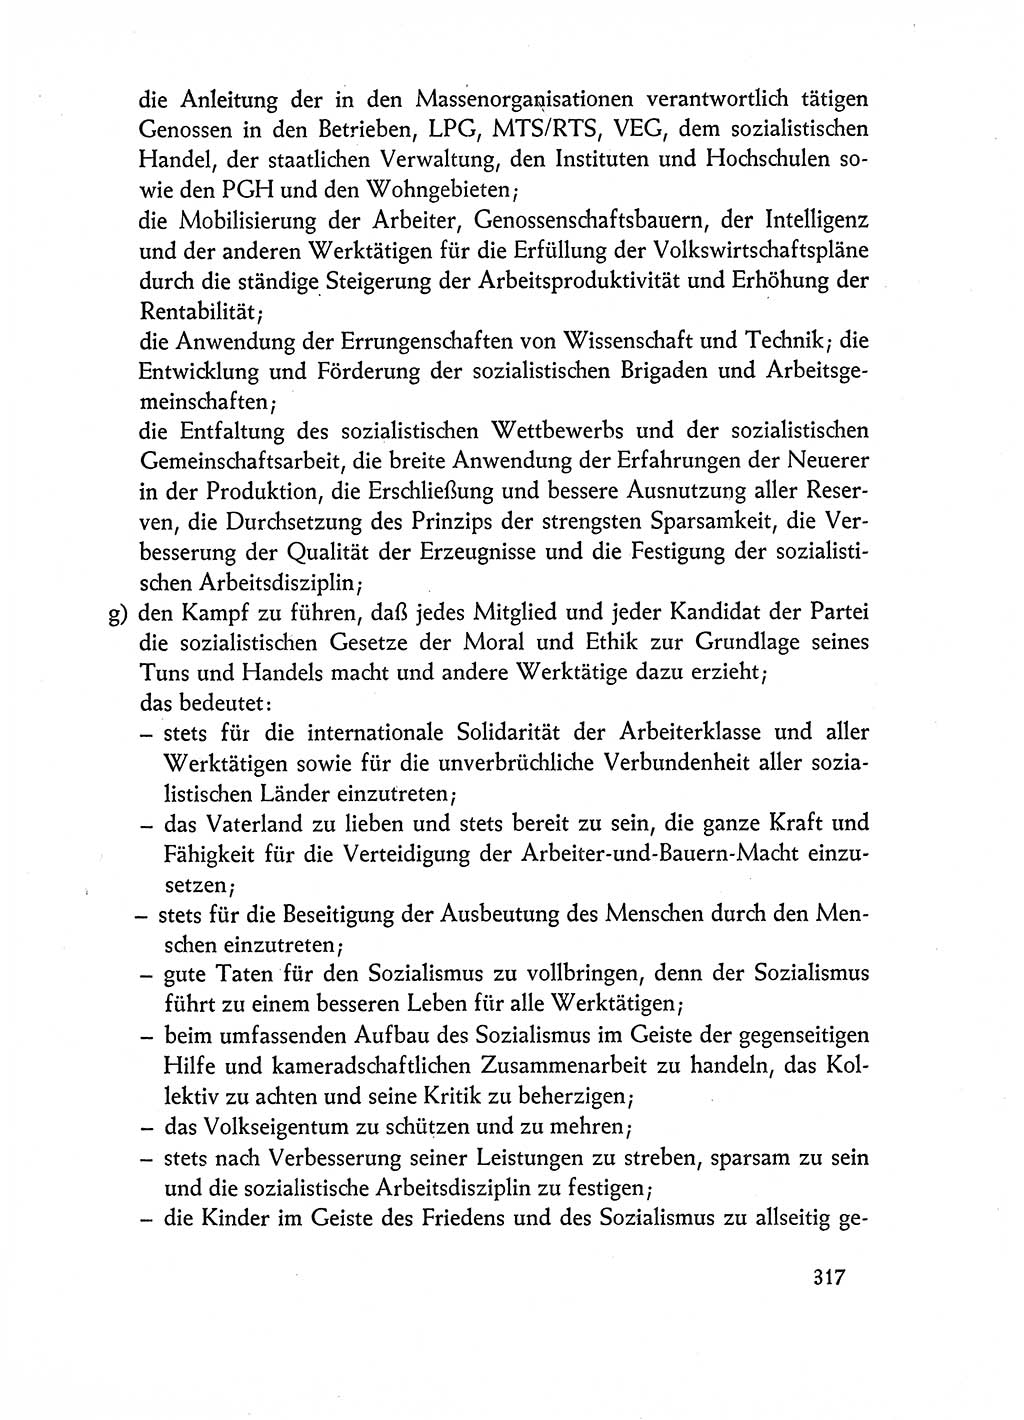 Dokumente der Sozialistischen Einheitspartei Deutschlands (SED) [Deutsche Demokratische Republik (DDR)] 1962-1963, Seite 317 (Dok. SED DDR 1962-1963, S. 317)